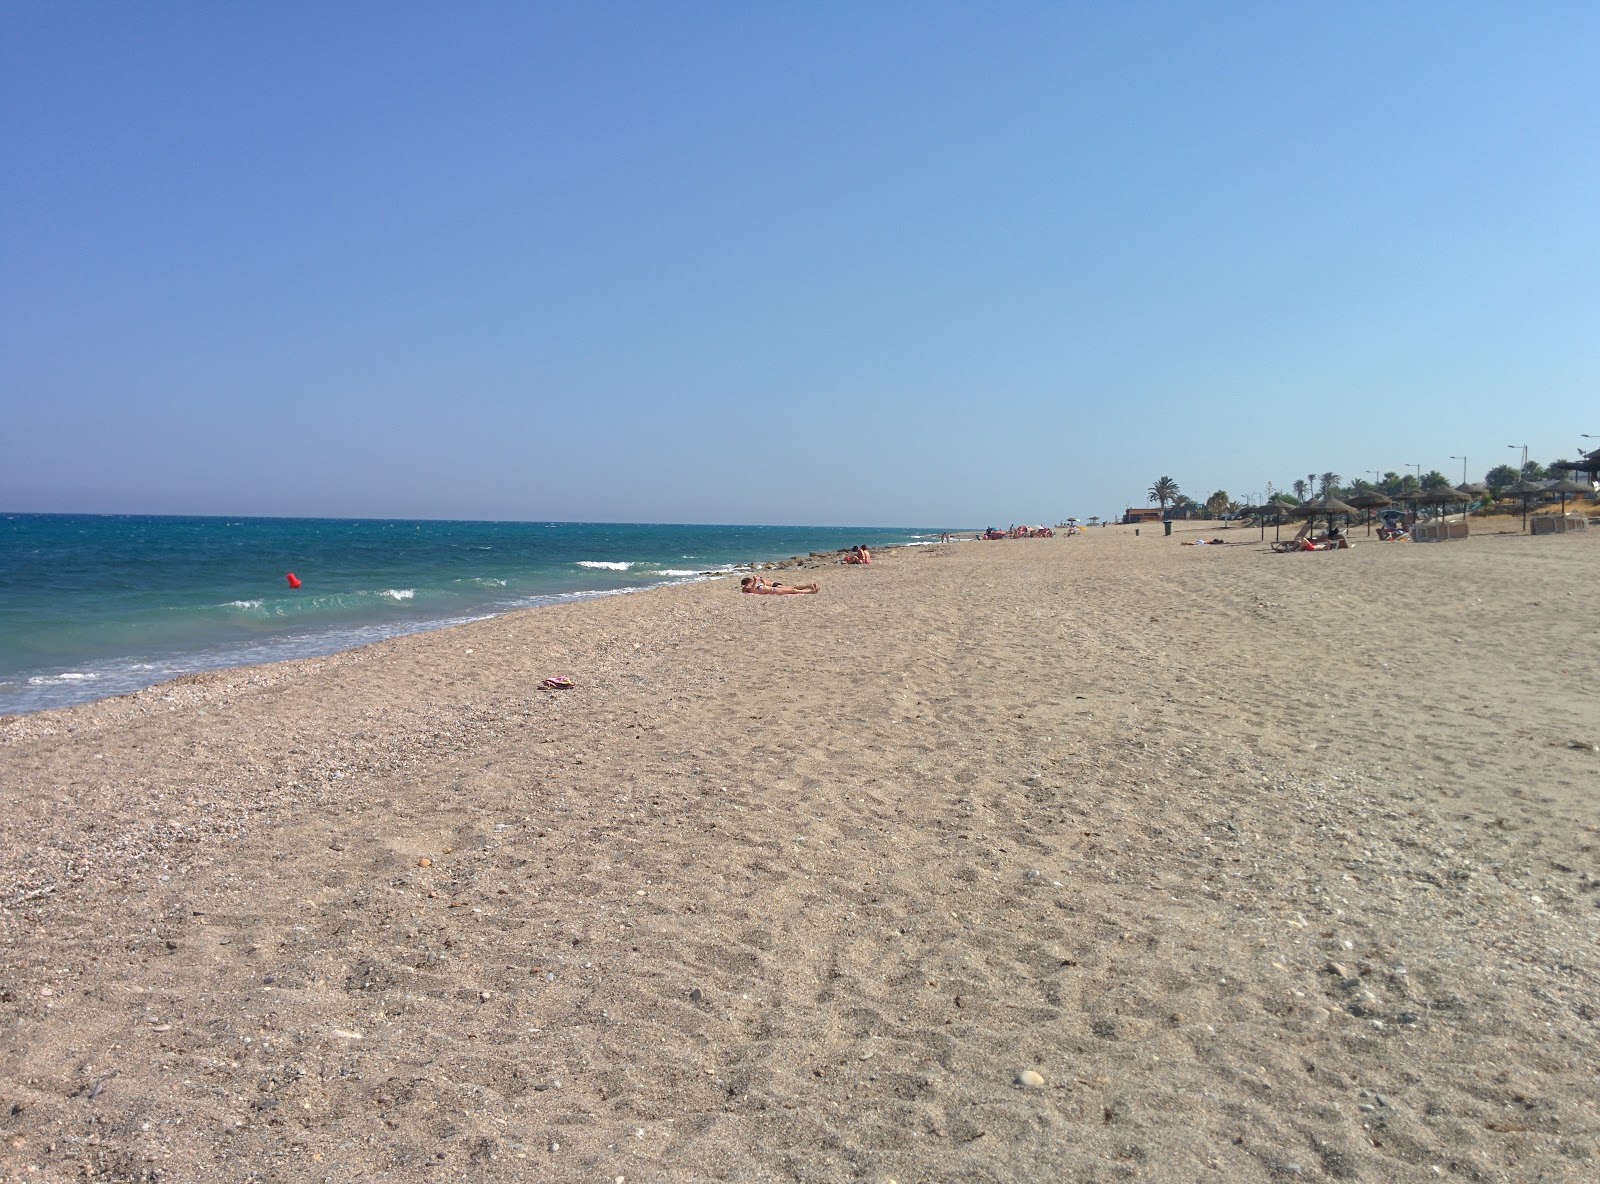 Playa del descargador'in fotoğrafı parlak kabuk kumu yüzey ile